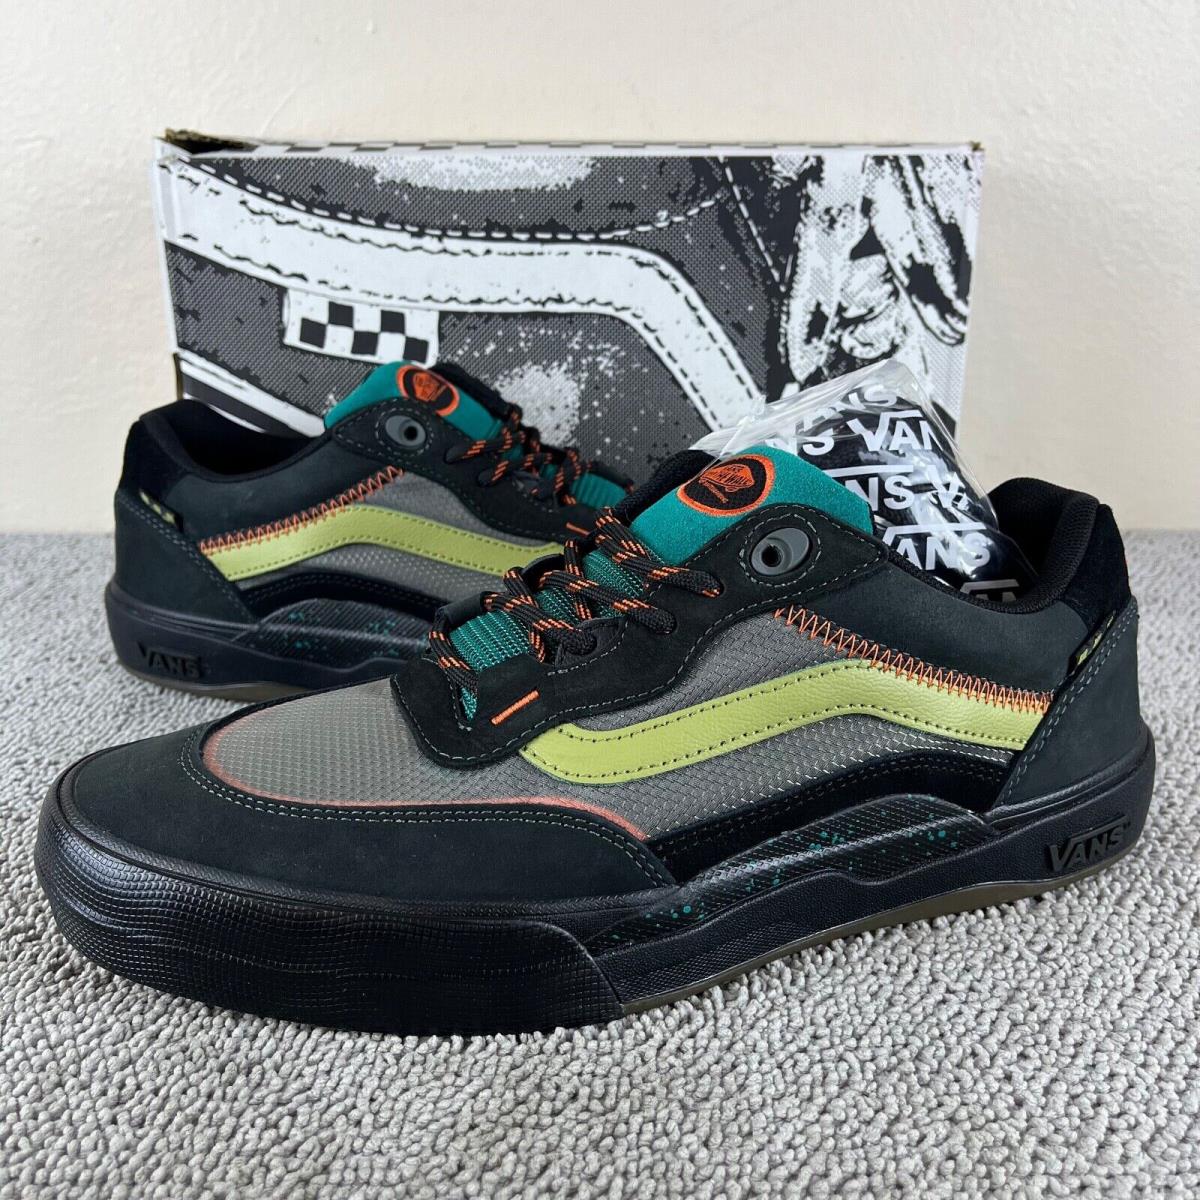 Vans Wayvee Outdoor Unexplored Black Popcush Skate Shoes Men`s Size 11.5